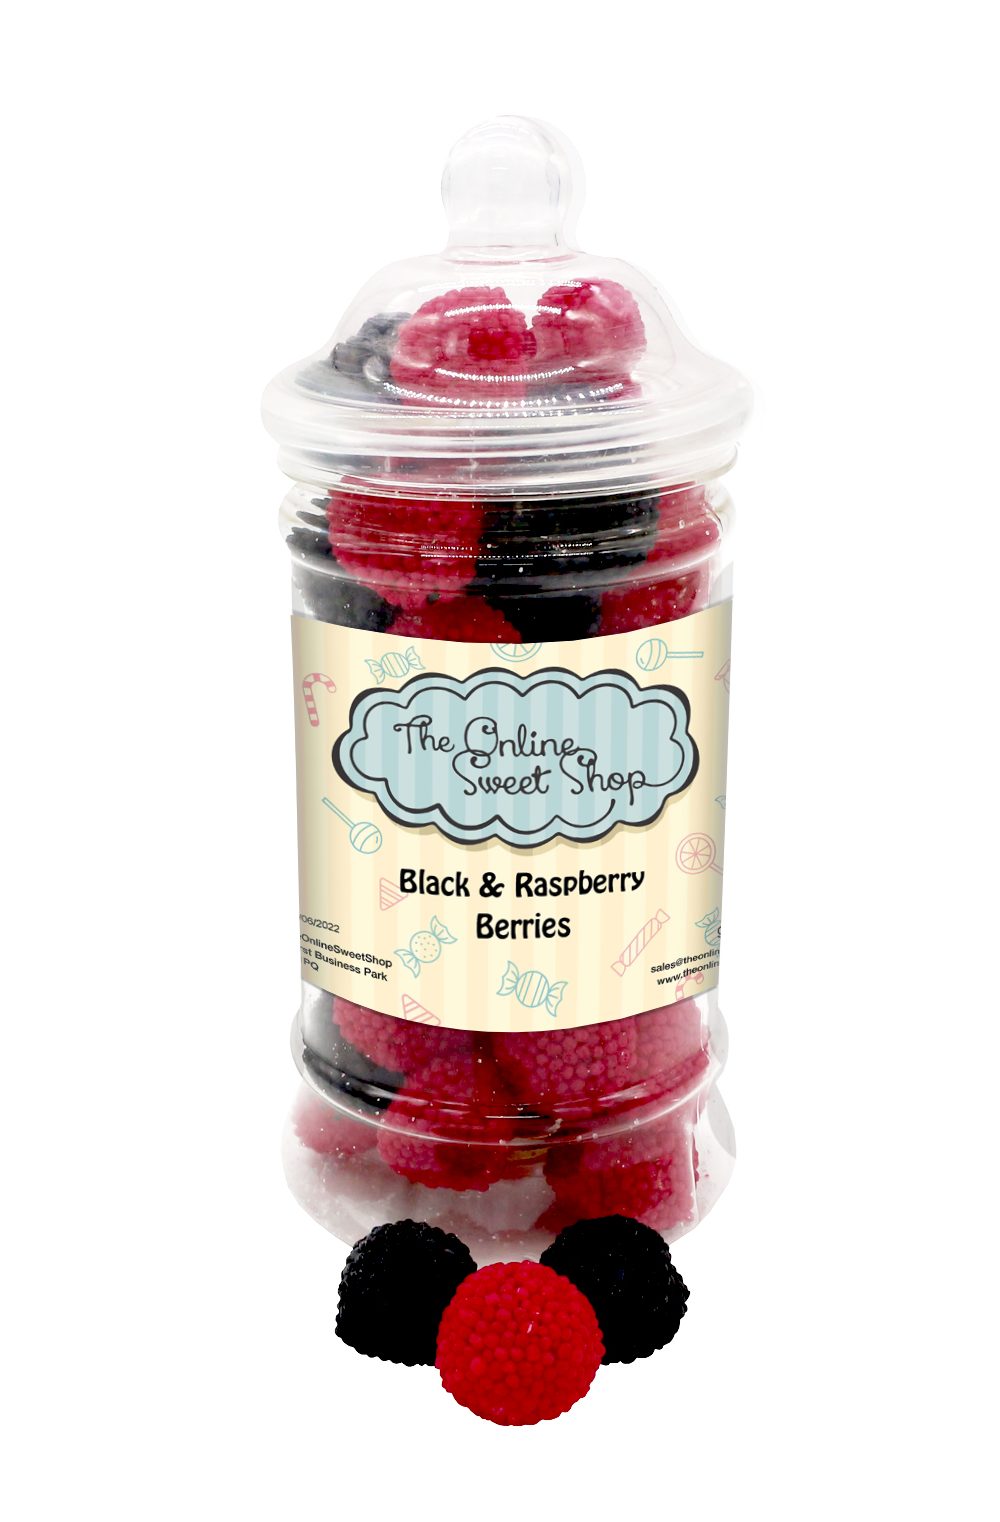 Black & Raspberry Berries Sweets Jar